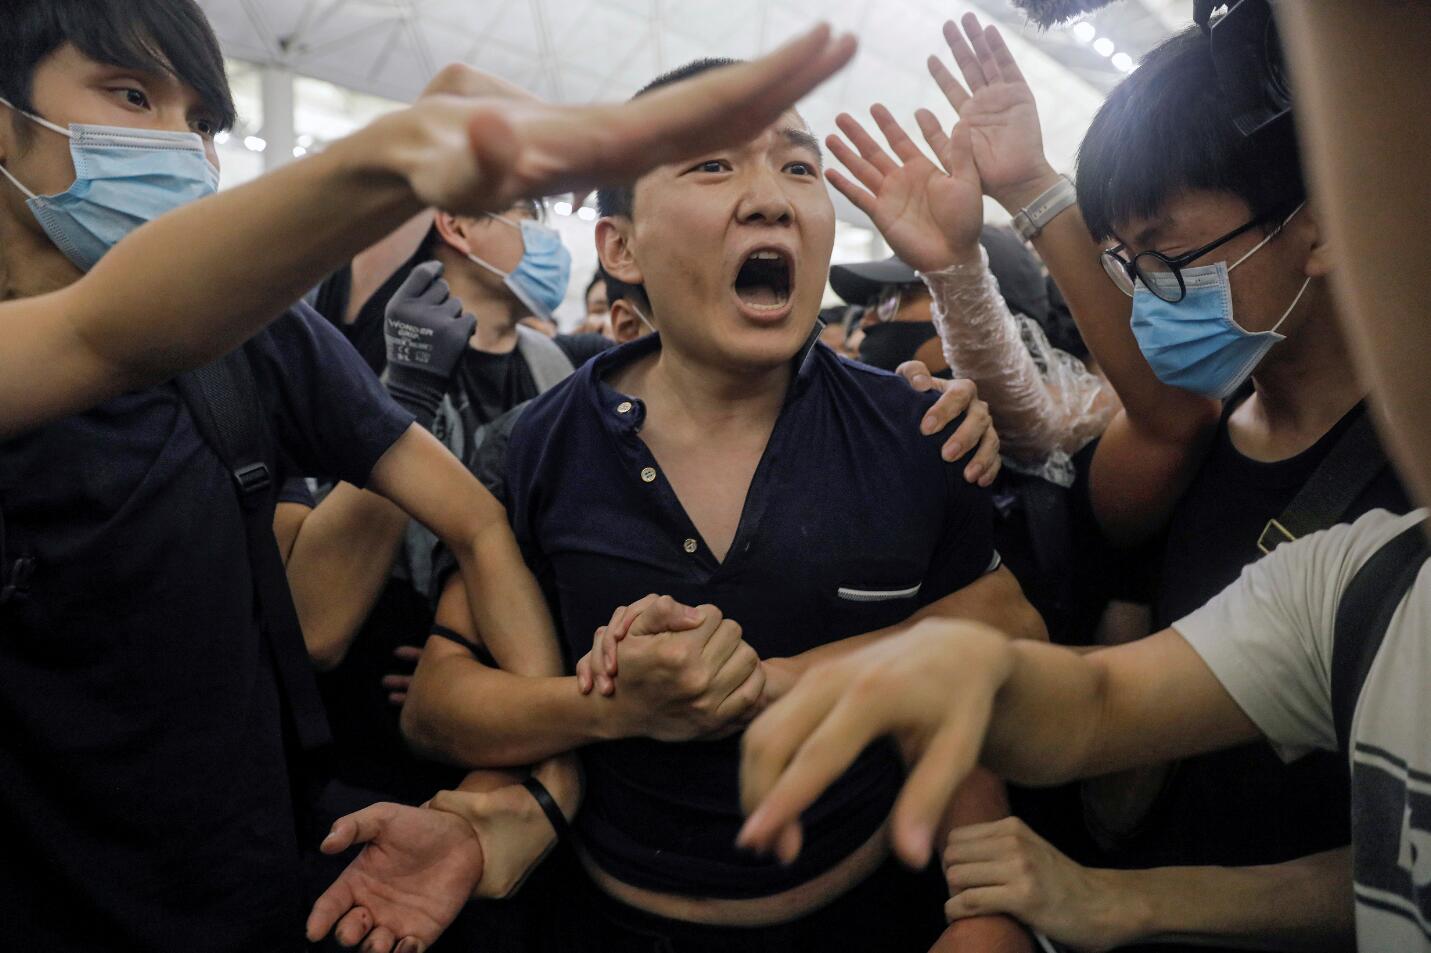 本月13日晚至14日凌晨機場示威事件中m環球時報n記者付國豪被暴徒捆綁並毆打C(美聯社資料圖片) 